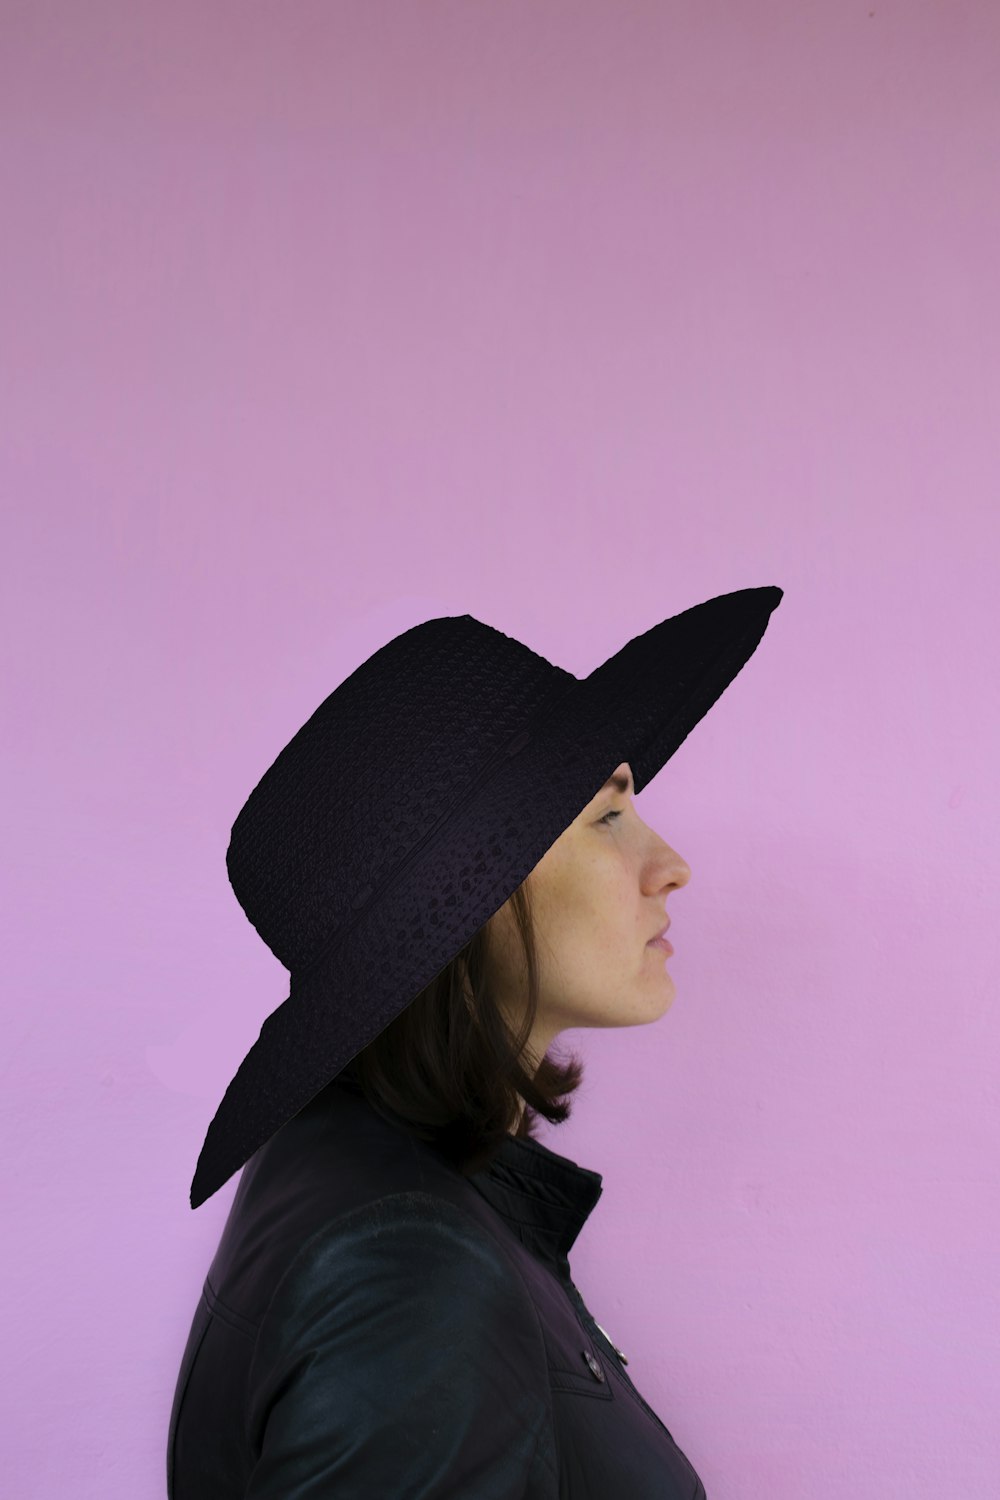 Femme au chapeau noir et chemise noire